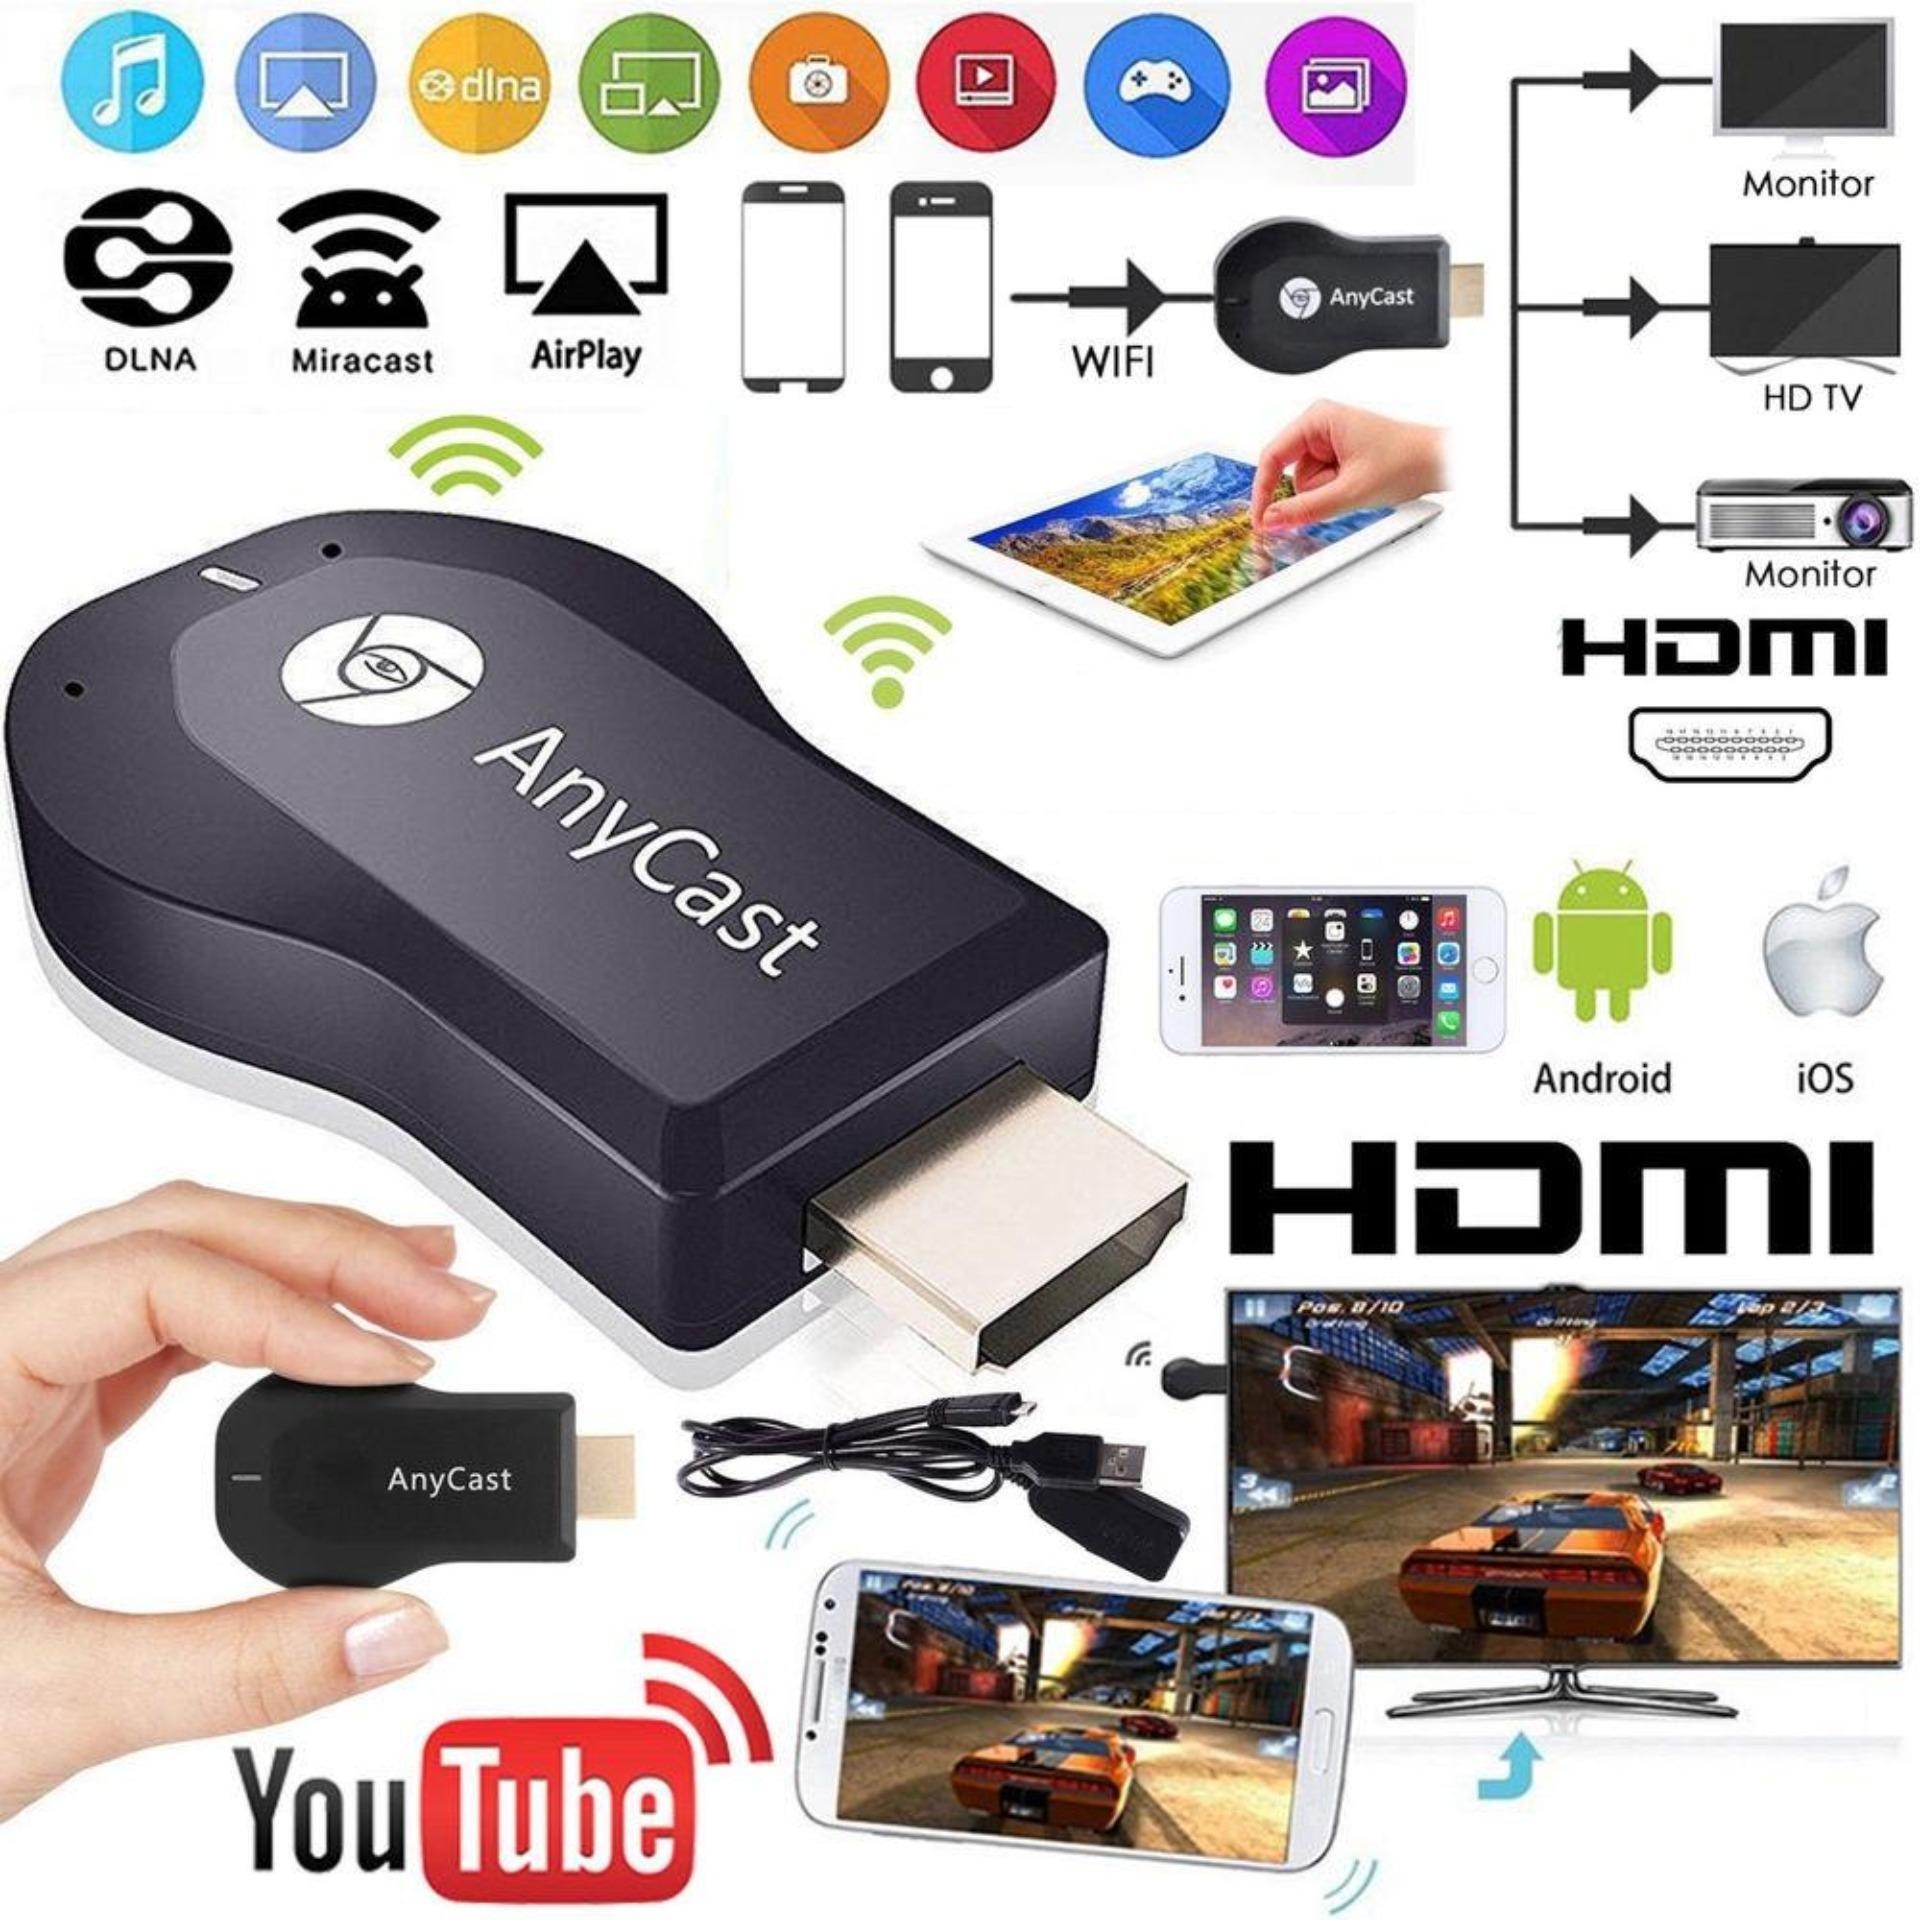 HDMI Không Dây Anycast MX - Chia Sẻ Kết Nối Điện Thoại, Laptop, Máy Chiếu, Các Thiết Bị Điện Tử Lên Màn Hình TV Hỗ Trợ Google Chrome Thông Minh - Thiết Bị Kết Nối Không Dây, Kết Nối Không Dây Hdmi - BH Toàn Quốc